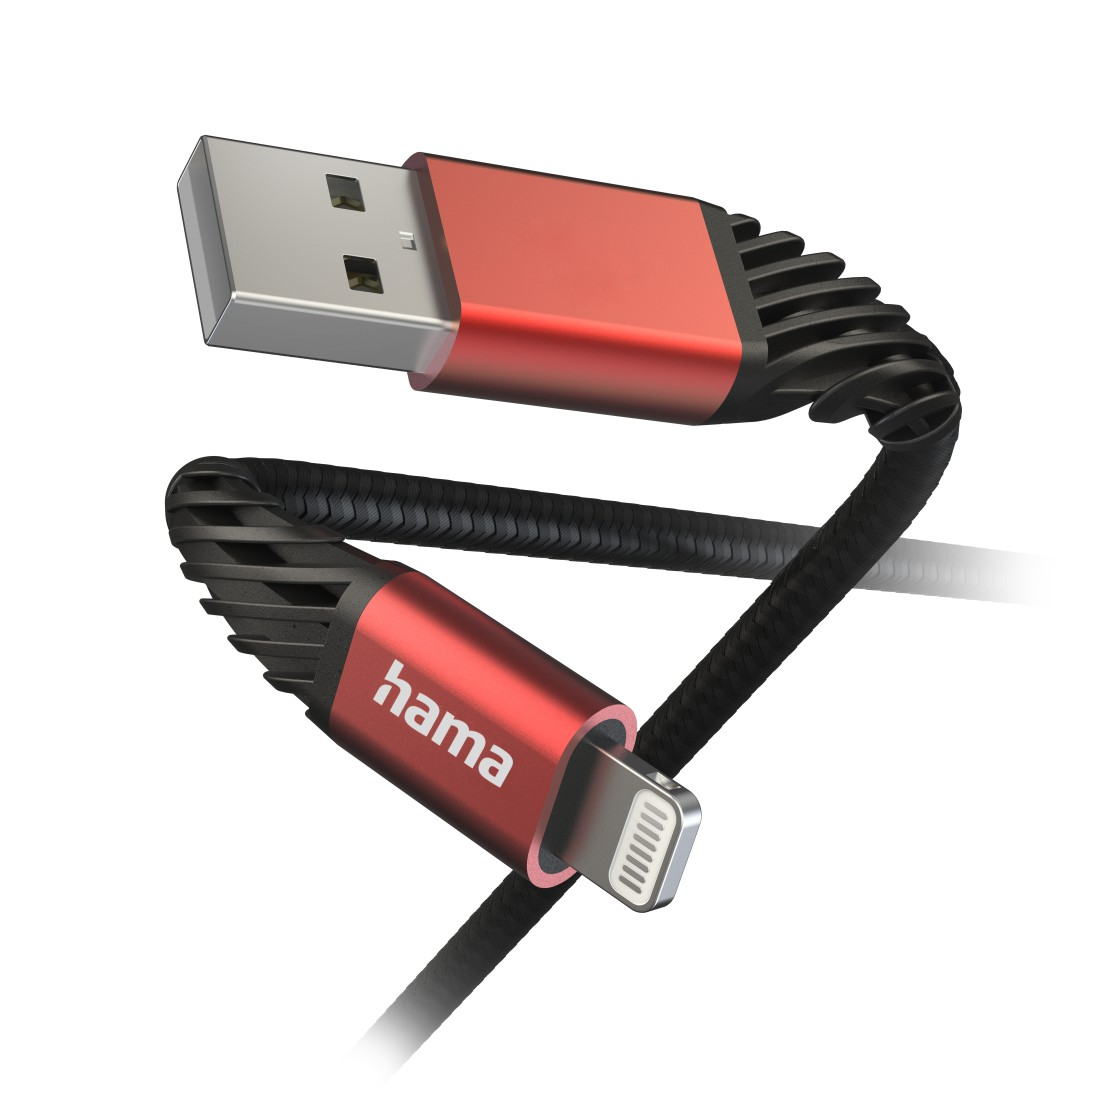 HAMA Extreme, USB-A m, Ladekabel, Schwarz/Rot Lightning, 1,5 auf